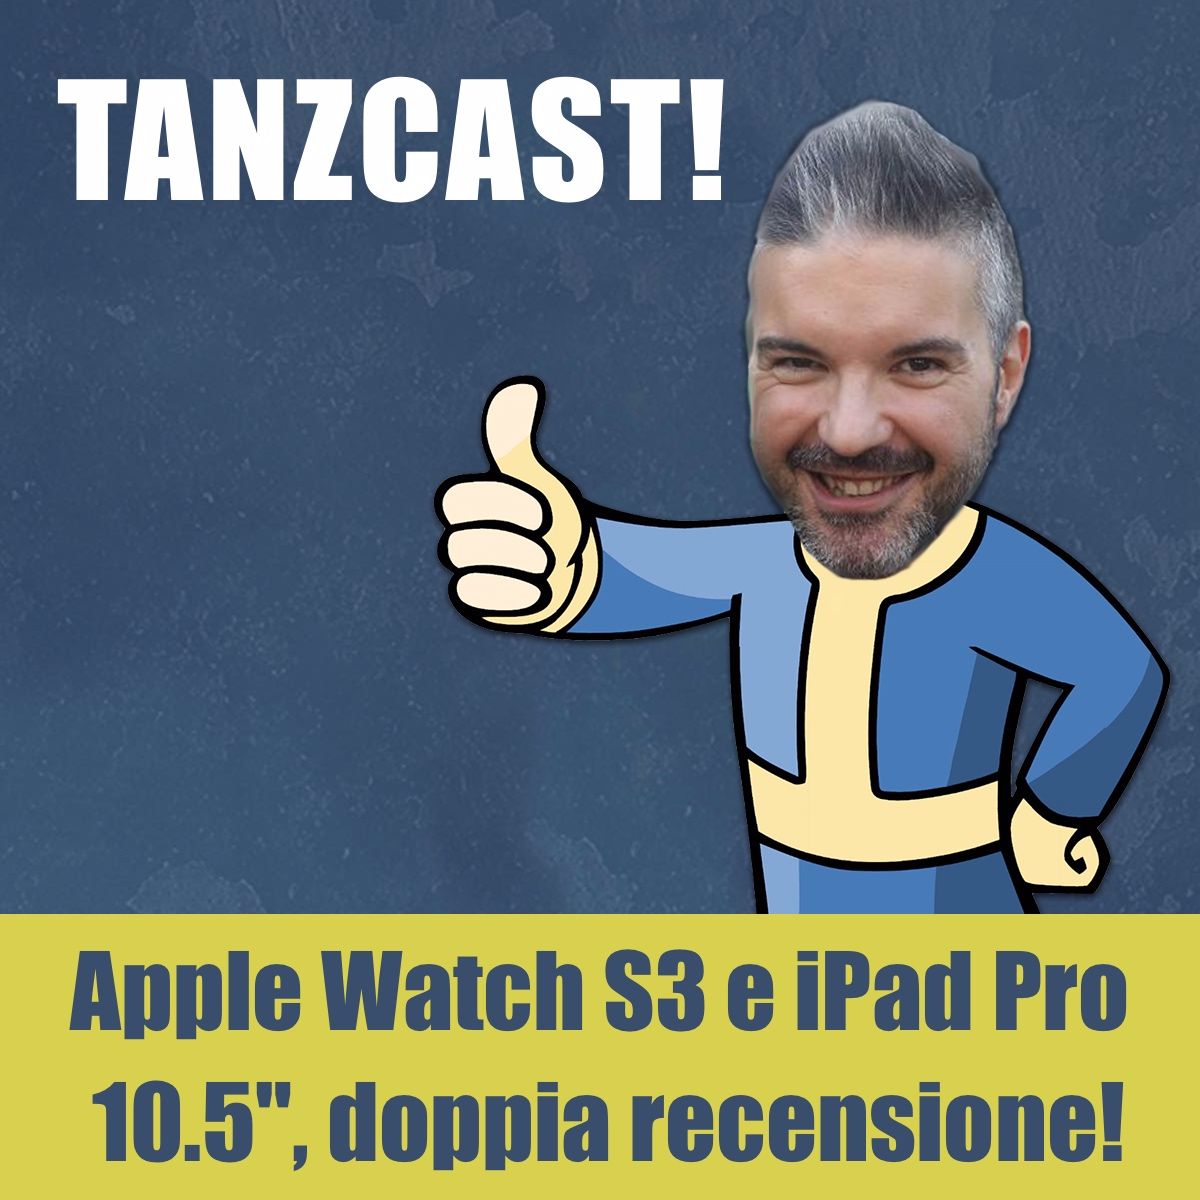 Apple Watch S3 e iPad Pro 10.5